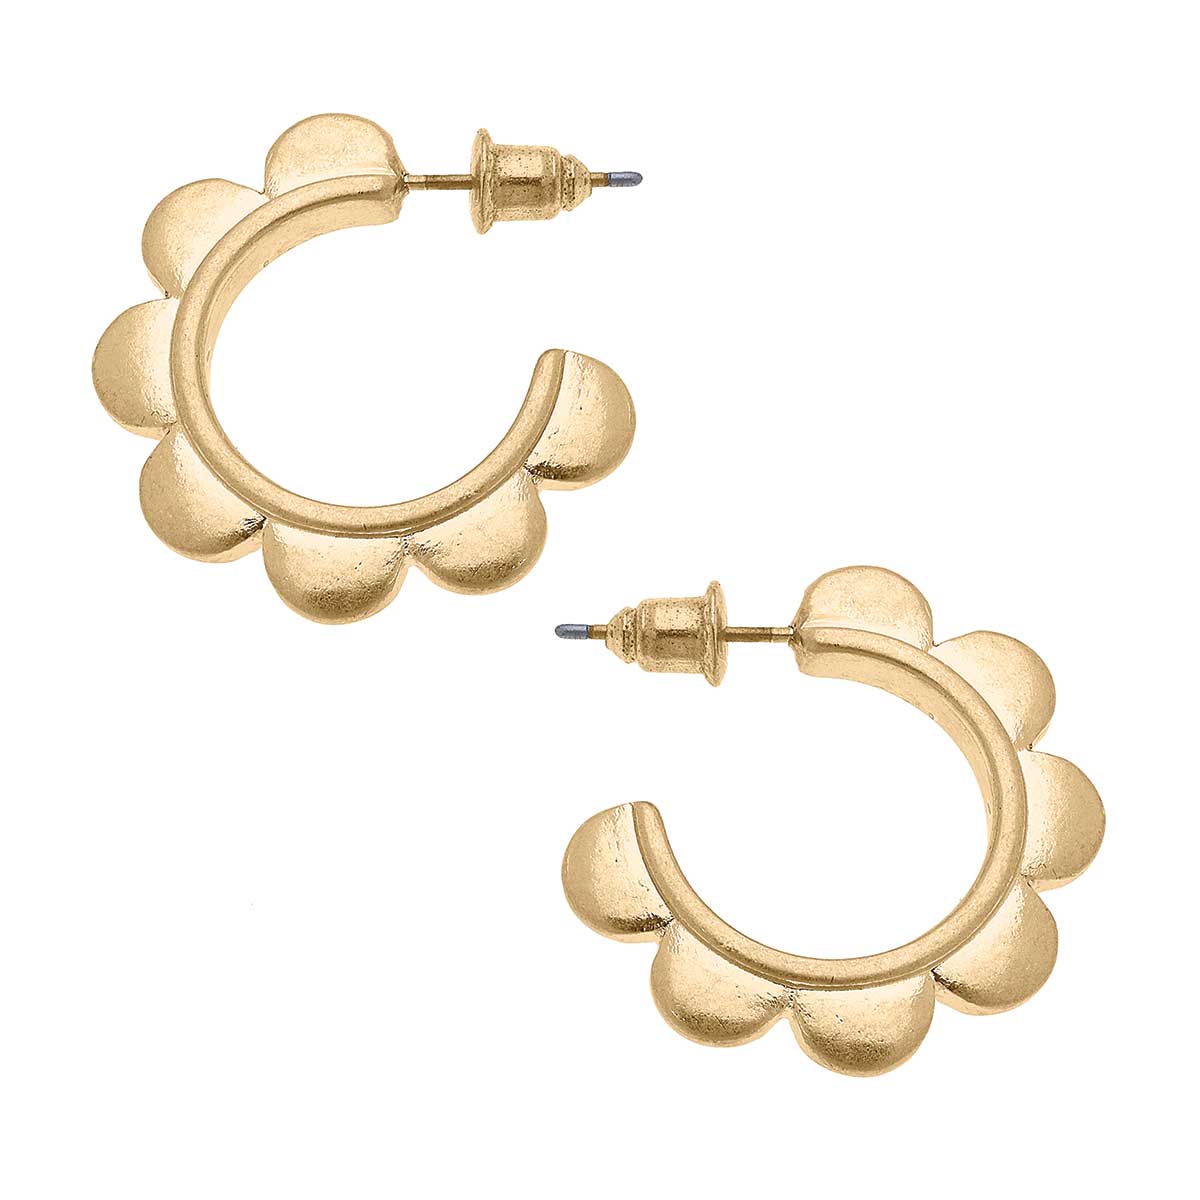 Caroline Scalloped Hoop Earrings in Worn Gold